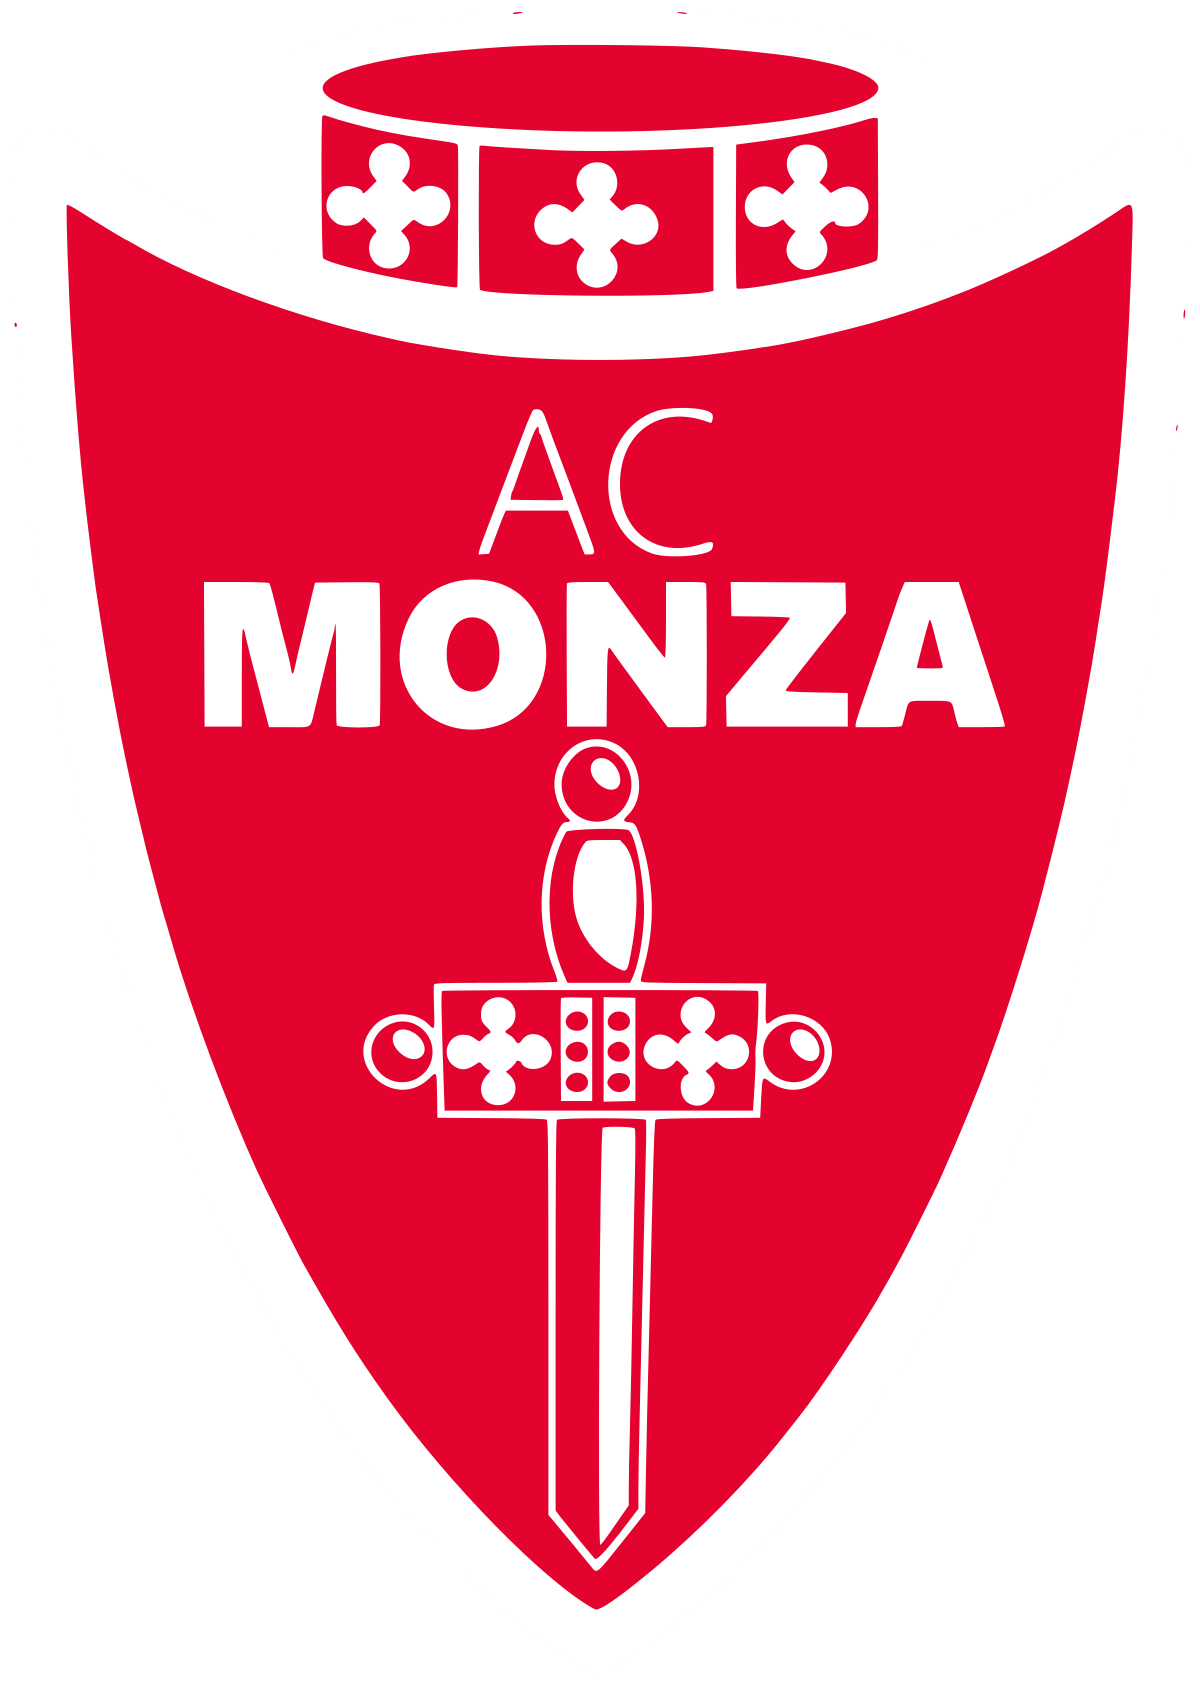 Monza Logo - A.C. Monza